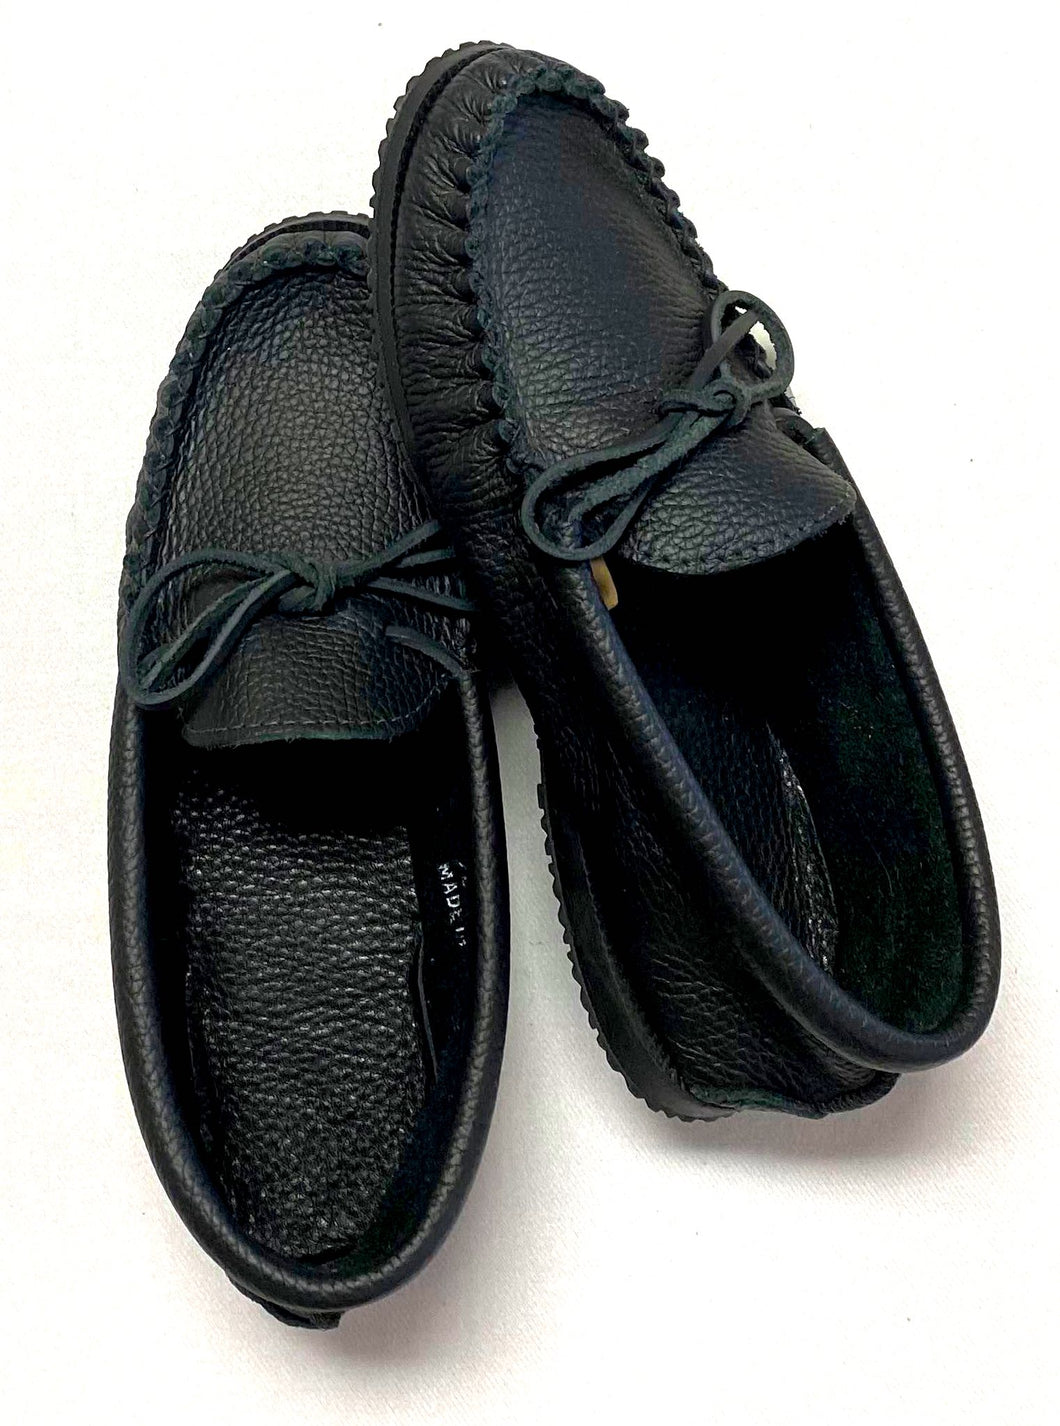 Laurentian Chief Men's Moccasins - Black Leather